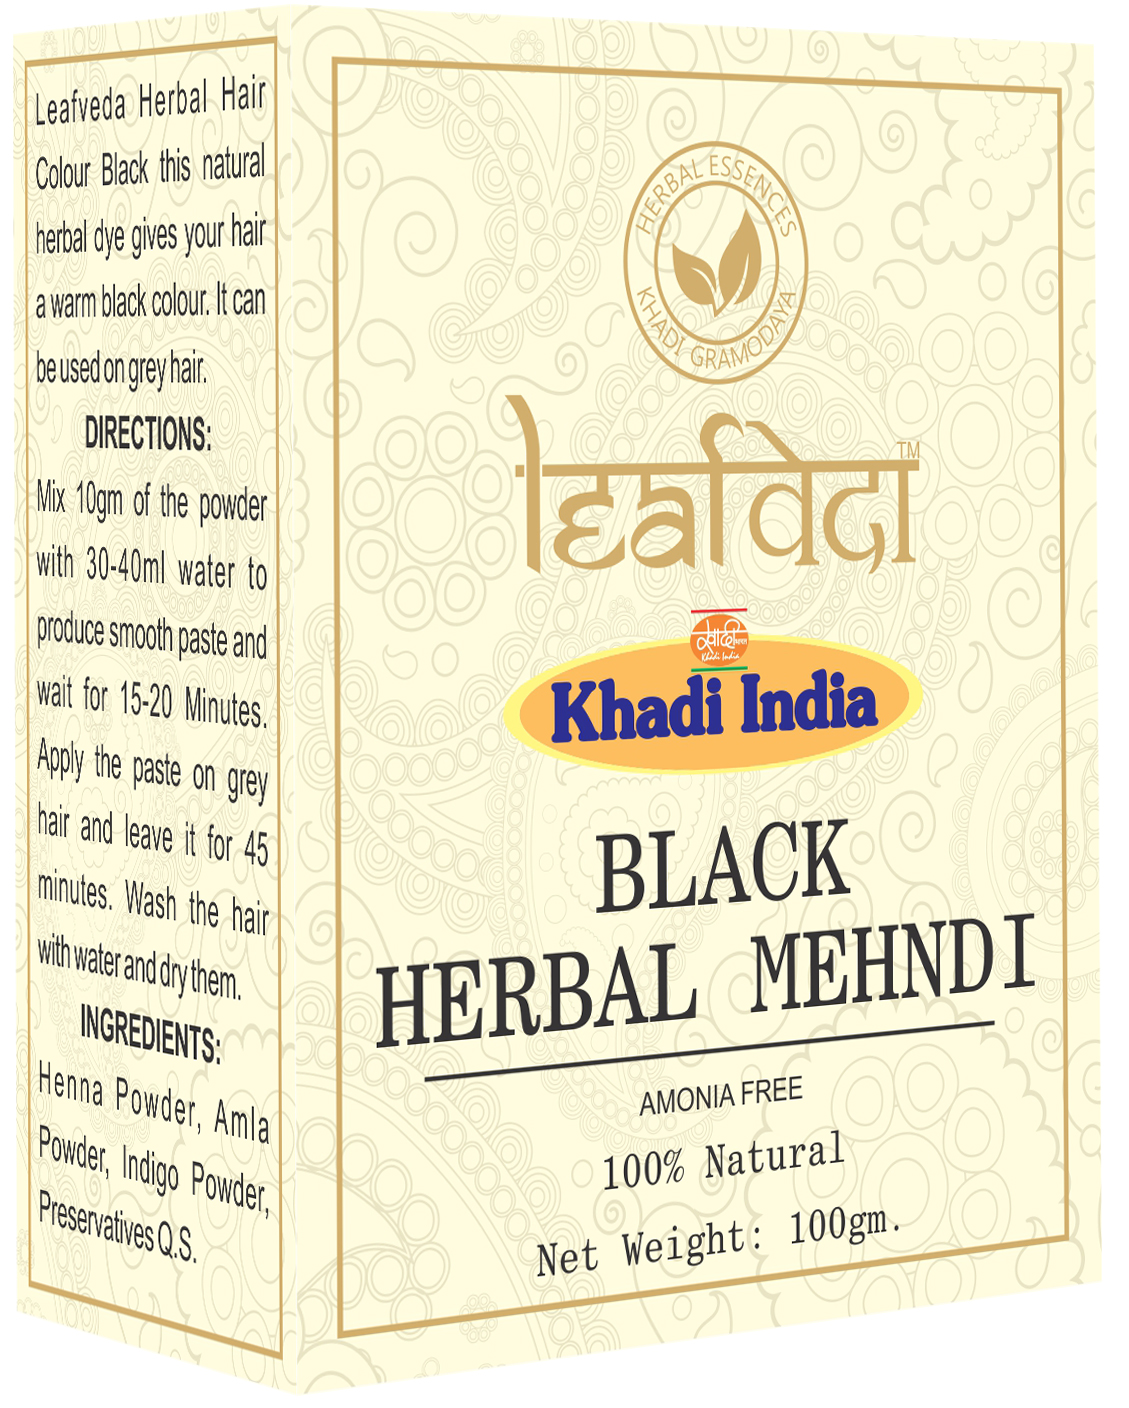 Buy Khadi Leafveda Black Herbal Mehndi Amonia Free at Best Price Online